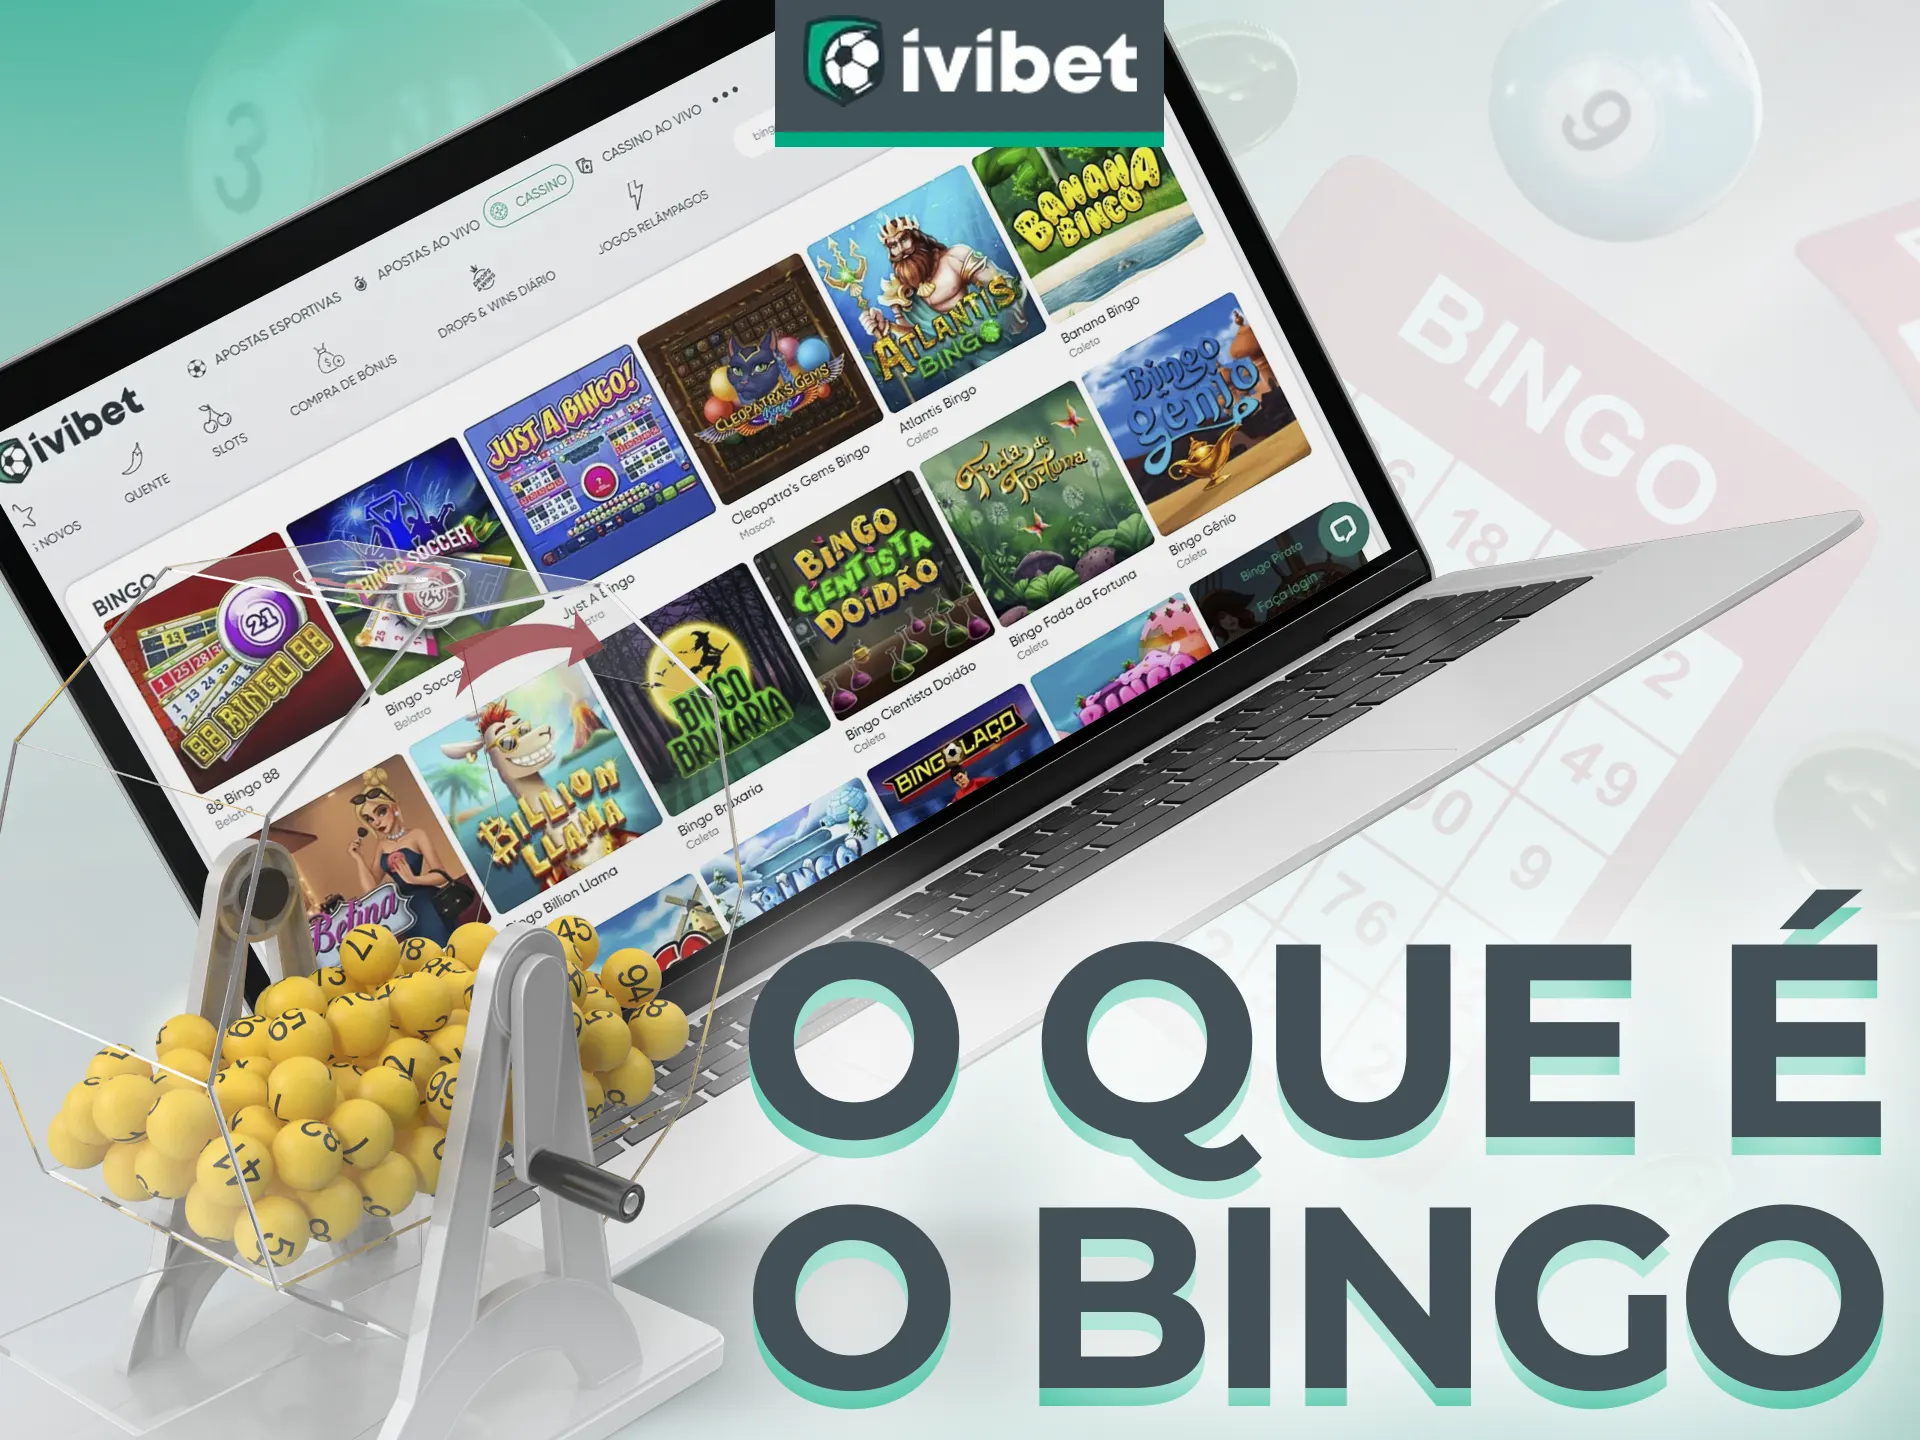 Bingo na Ivibet, jogo popular com muitas opções.